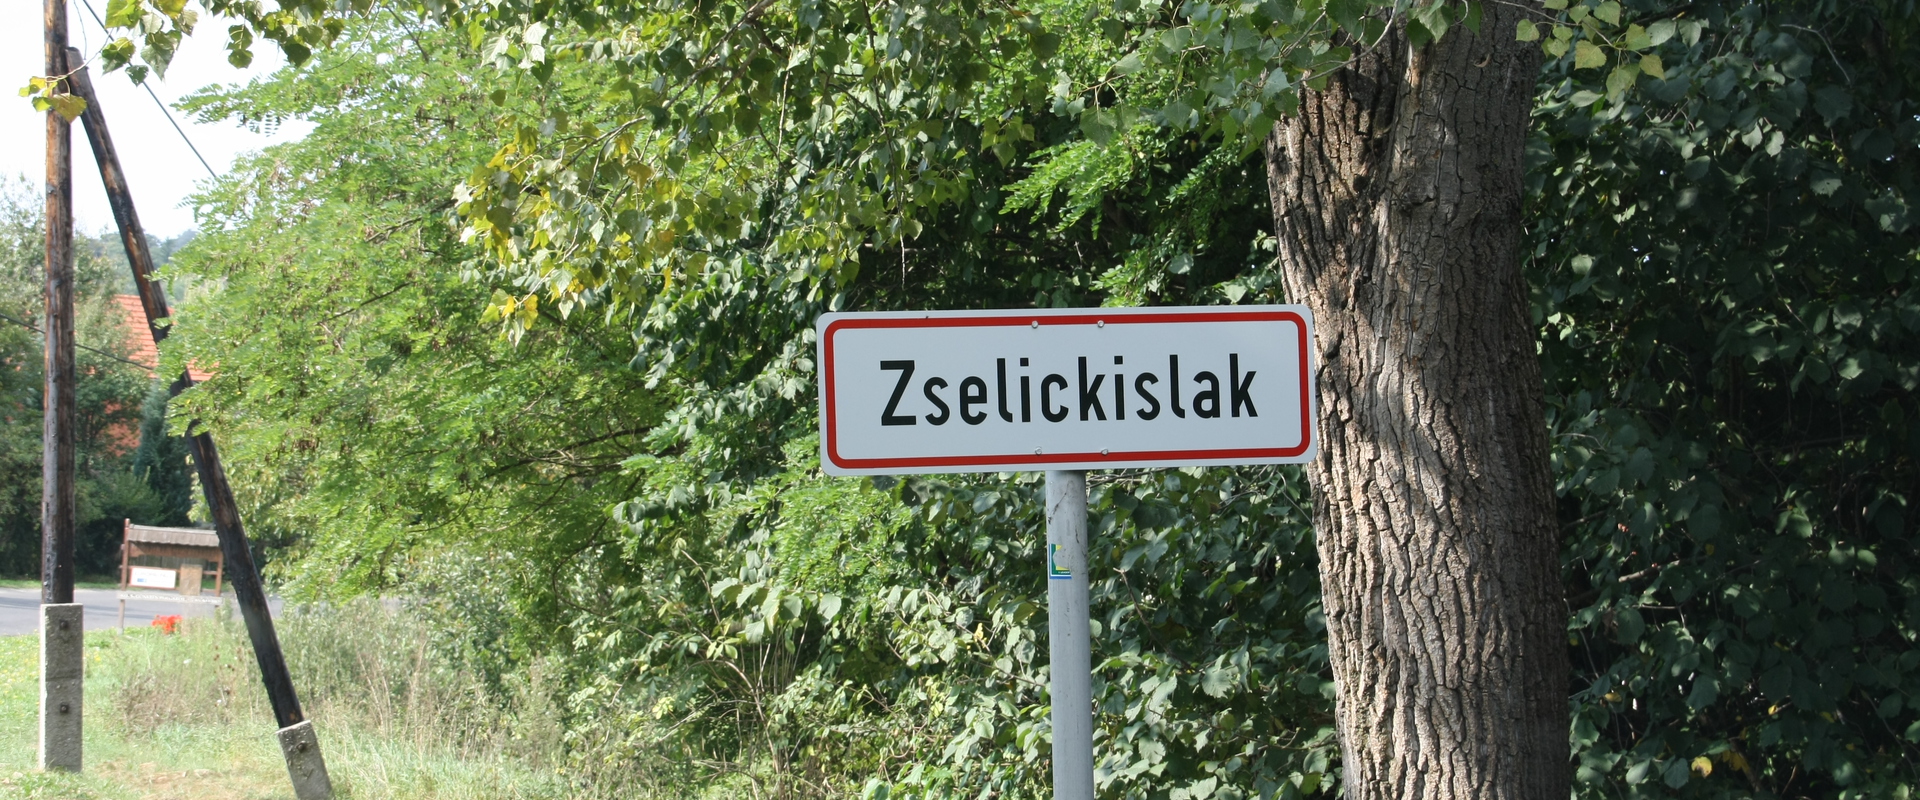 Köszöntjük Zselickislak oldalán!